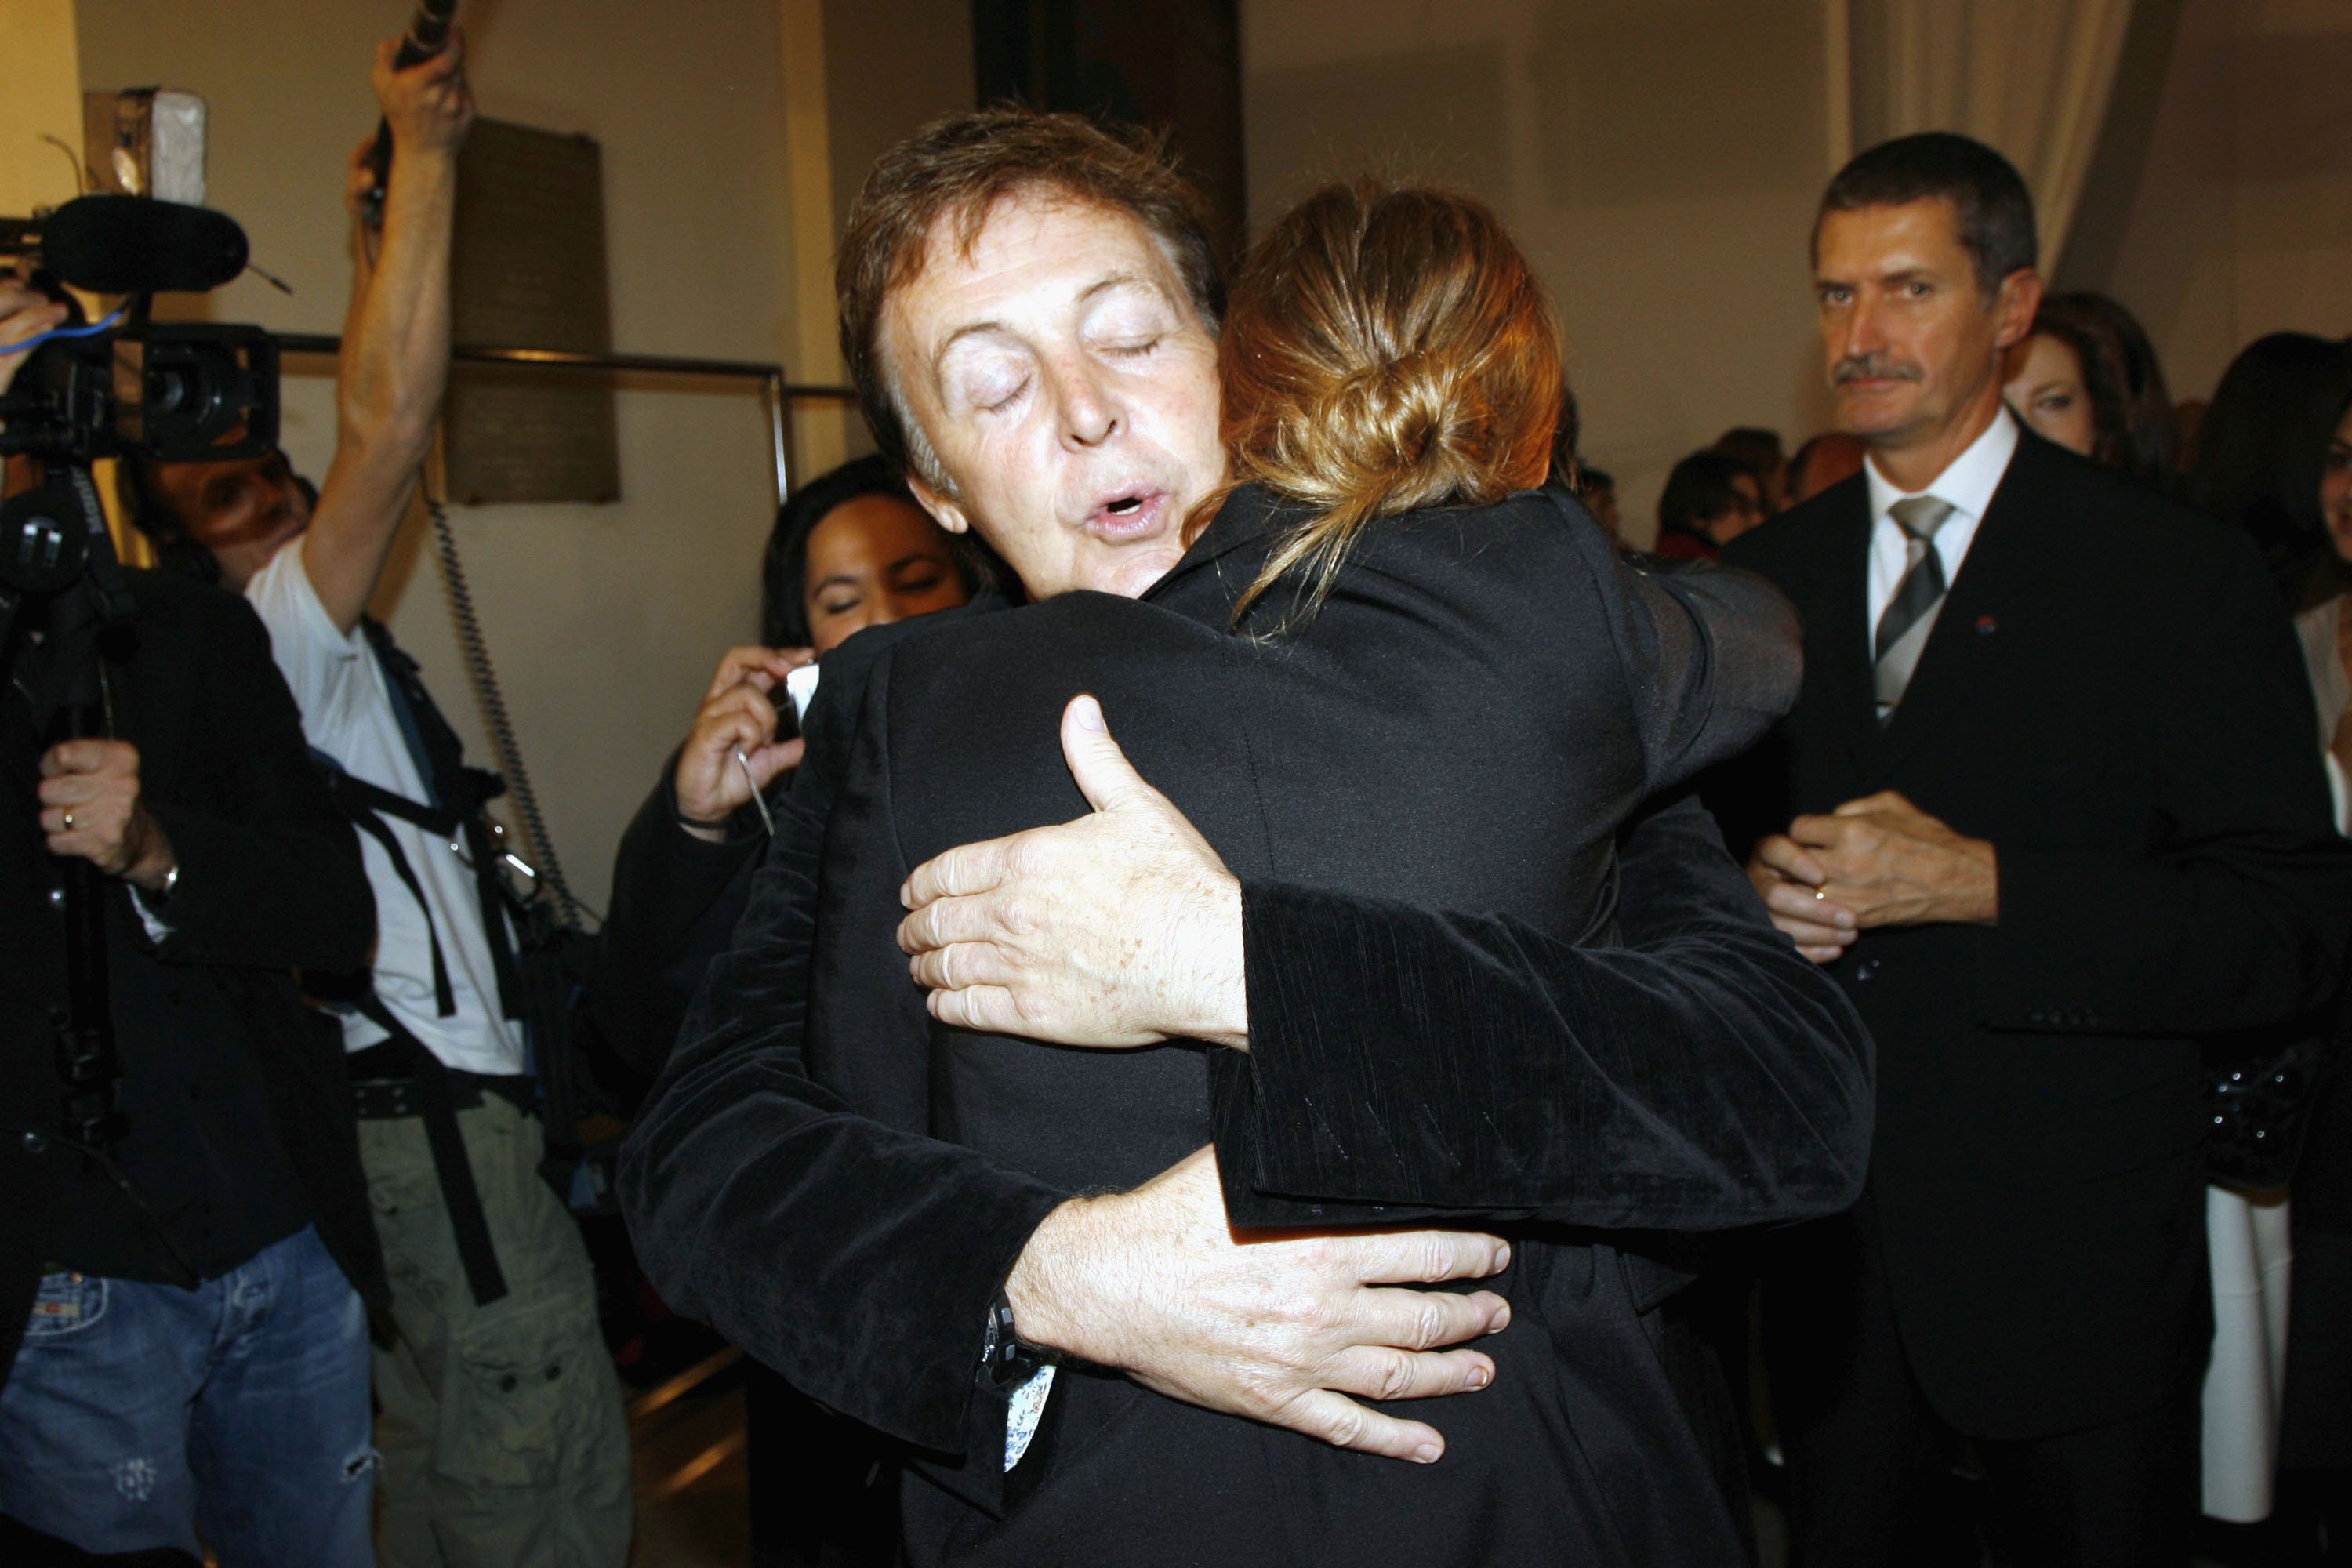 Paul McCartney serre sa fille Stella McCartney dans ses bras lors du défilé de mode Stella Mc Cartney, dans le cadre de la semaine de la mode printemps/été 2007 à Paris, le 5 octobre 2006 à Paris, France. | Source : Getty Images